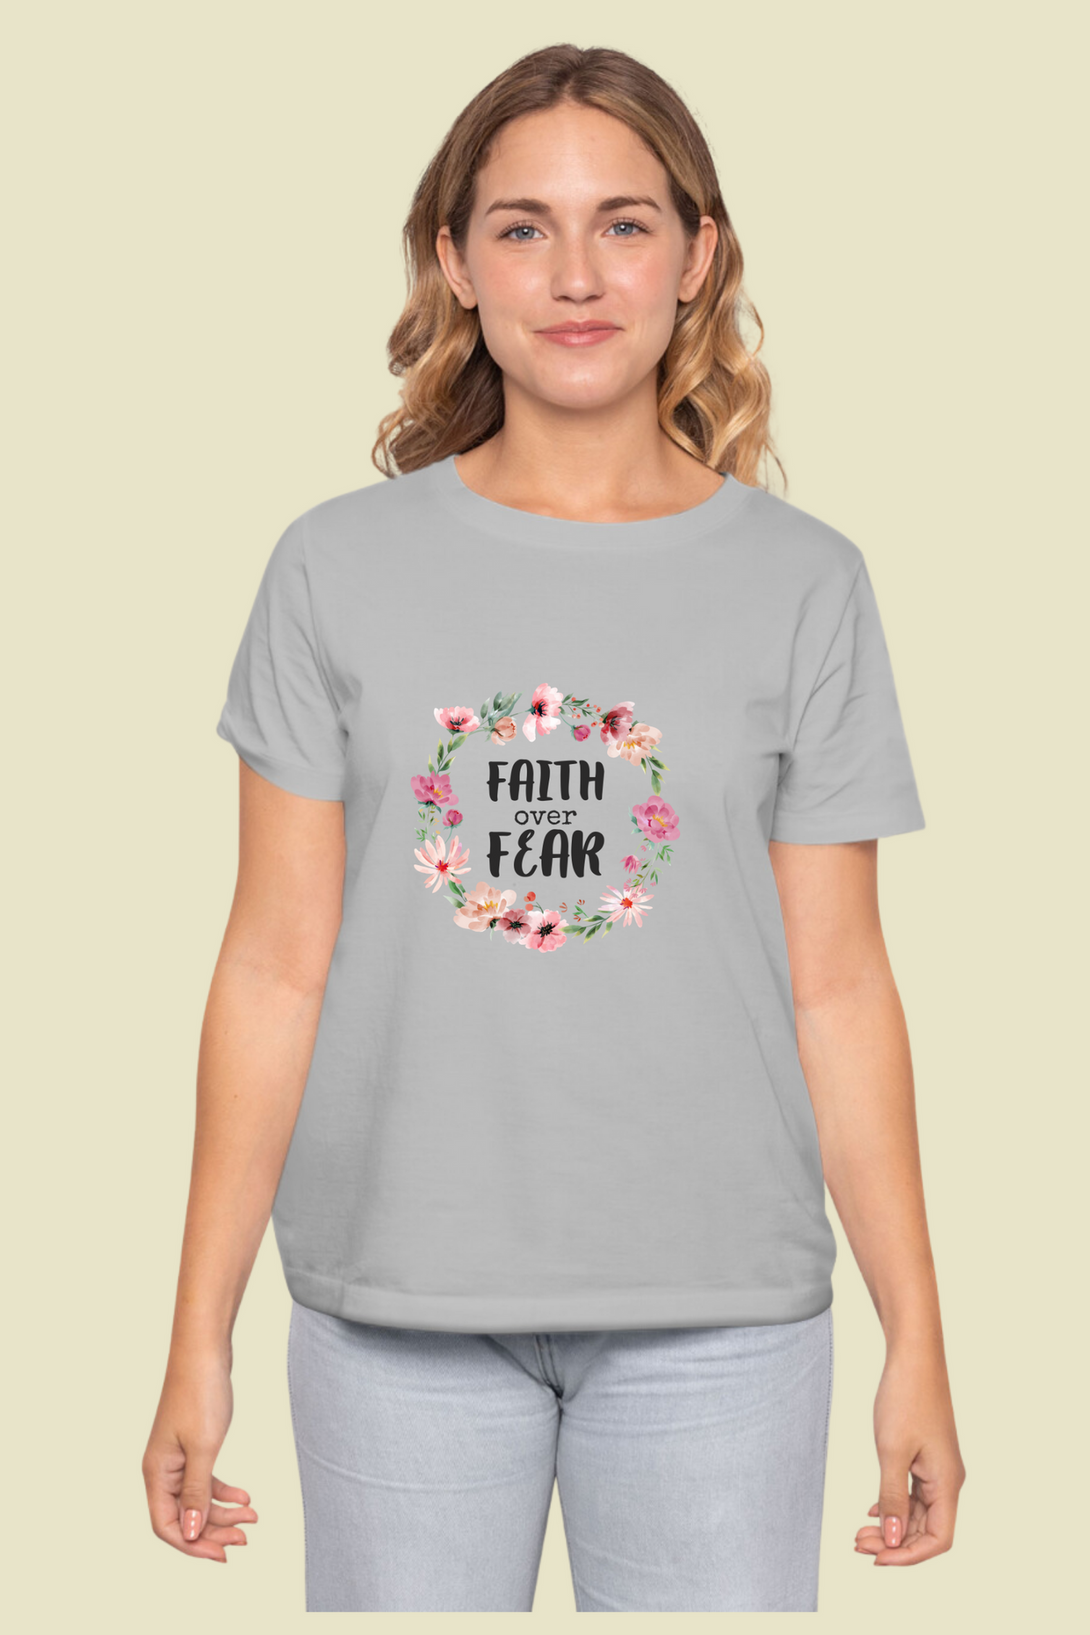 Faith Over Fear Printed T-Shirt For Women - WowWaves - 9